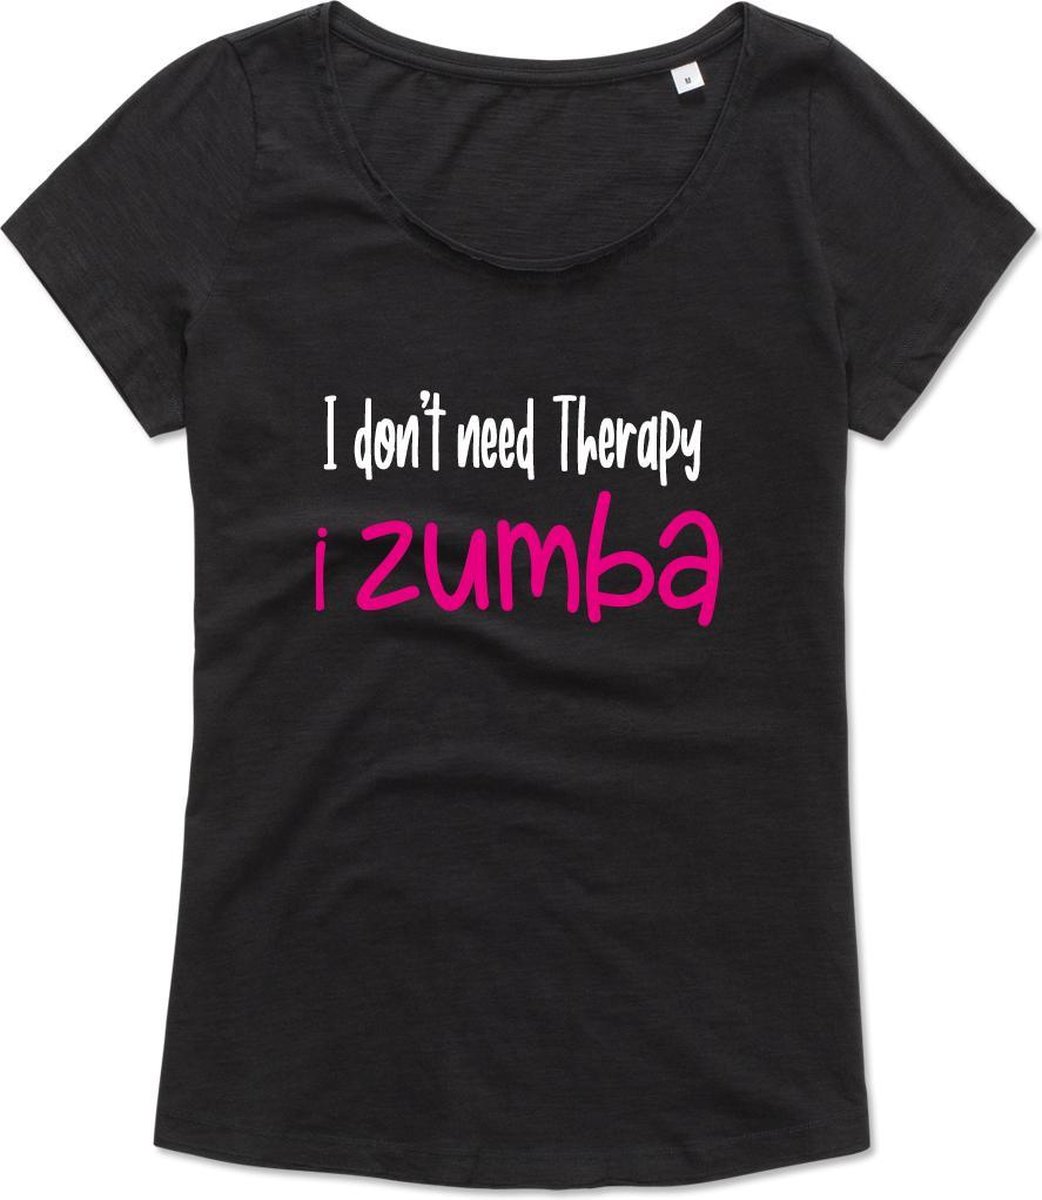 Zumba T-shirt - Workout T-shirt - Dance T-shirt, dans t-shirt, sport t-shirt, Gym T-shirt, Lifestyle T-shirt - I Don't need therapy, I zumba – L